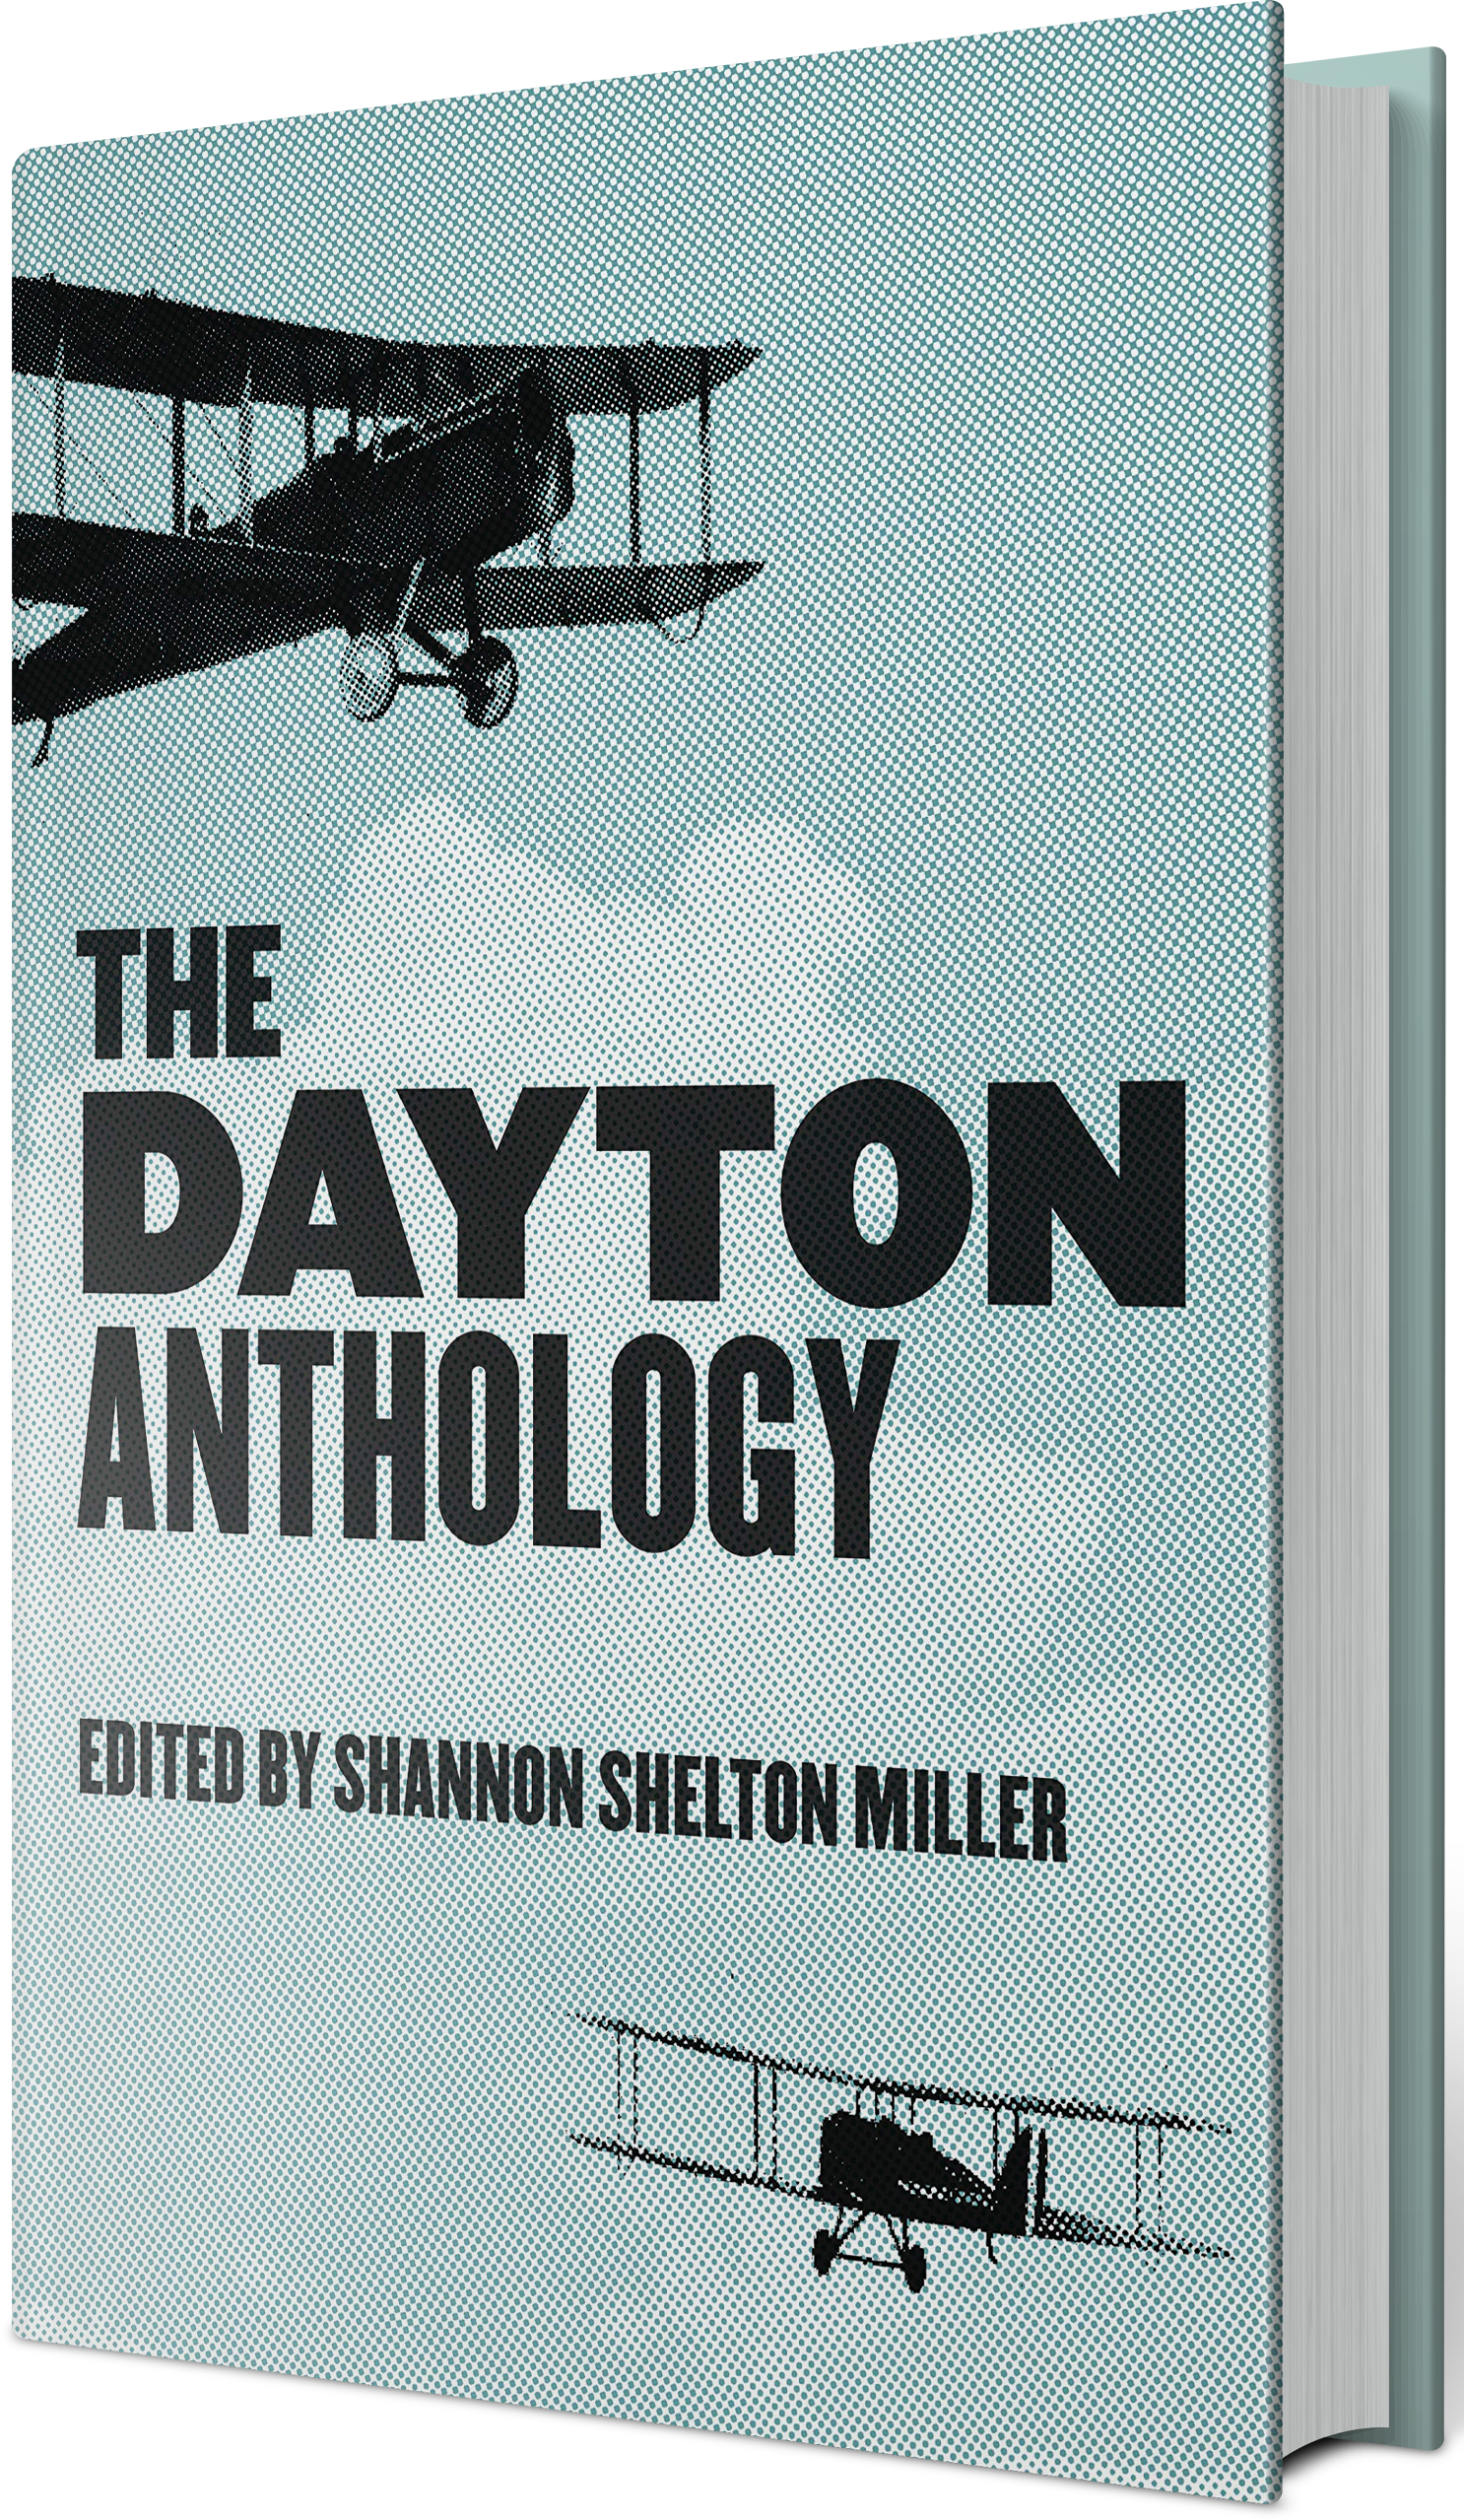 The Dayton Anthology